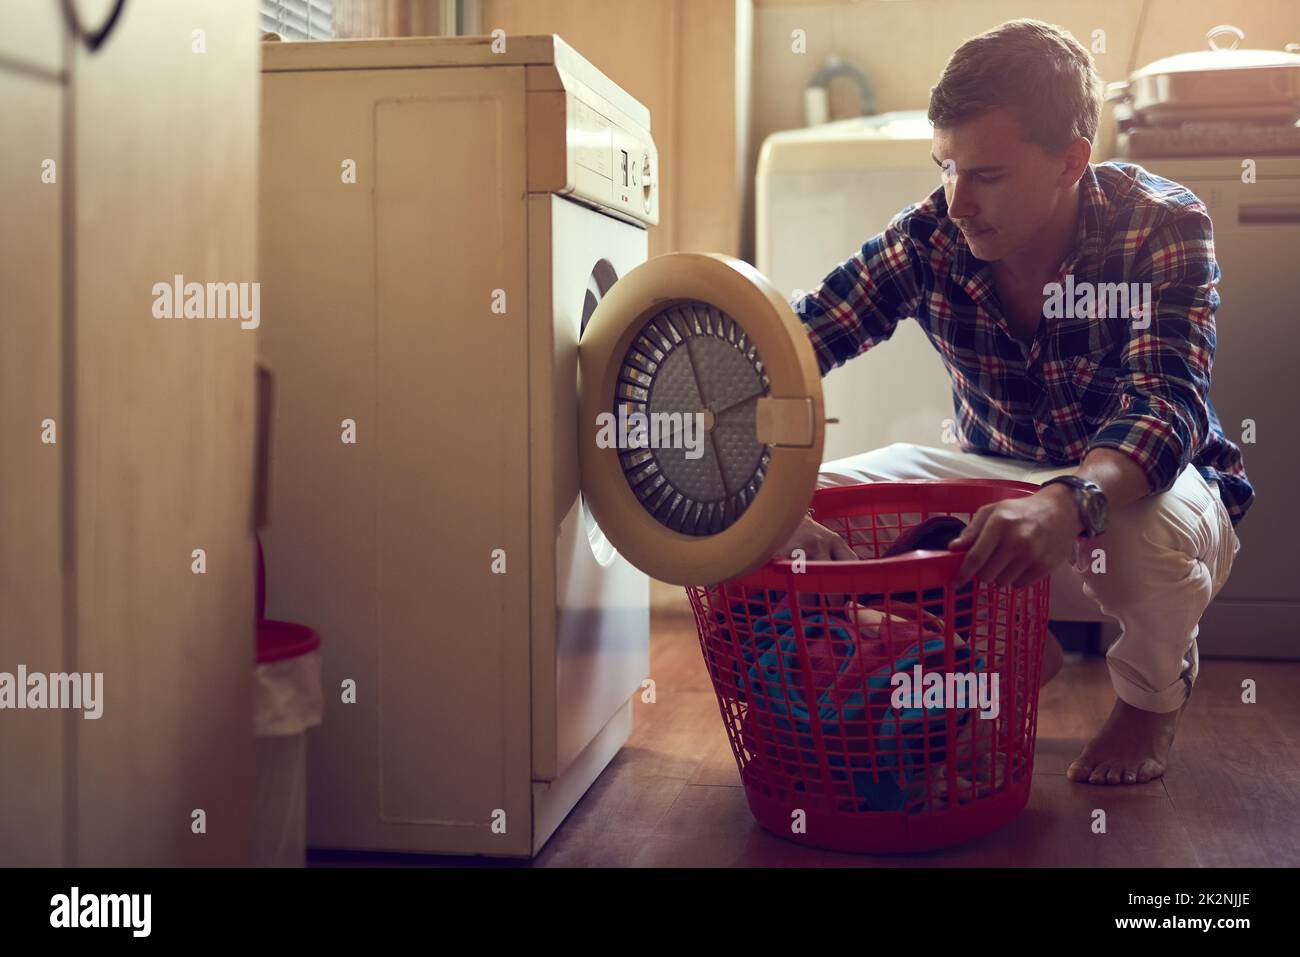 Sein Wäschespiel ist stark. Aufnahme eines jungen Mannes, der zu Hause Wäsche waschen soll. Stockfoto